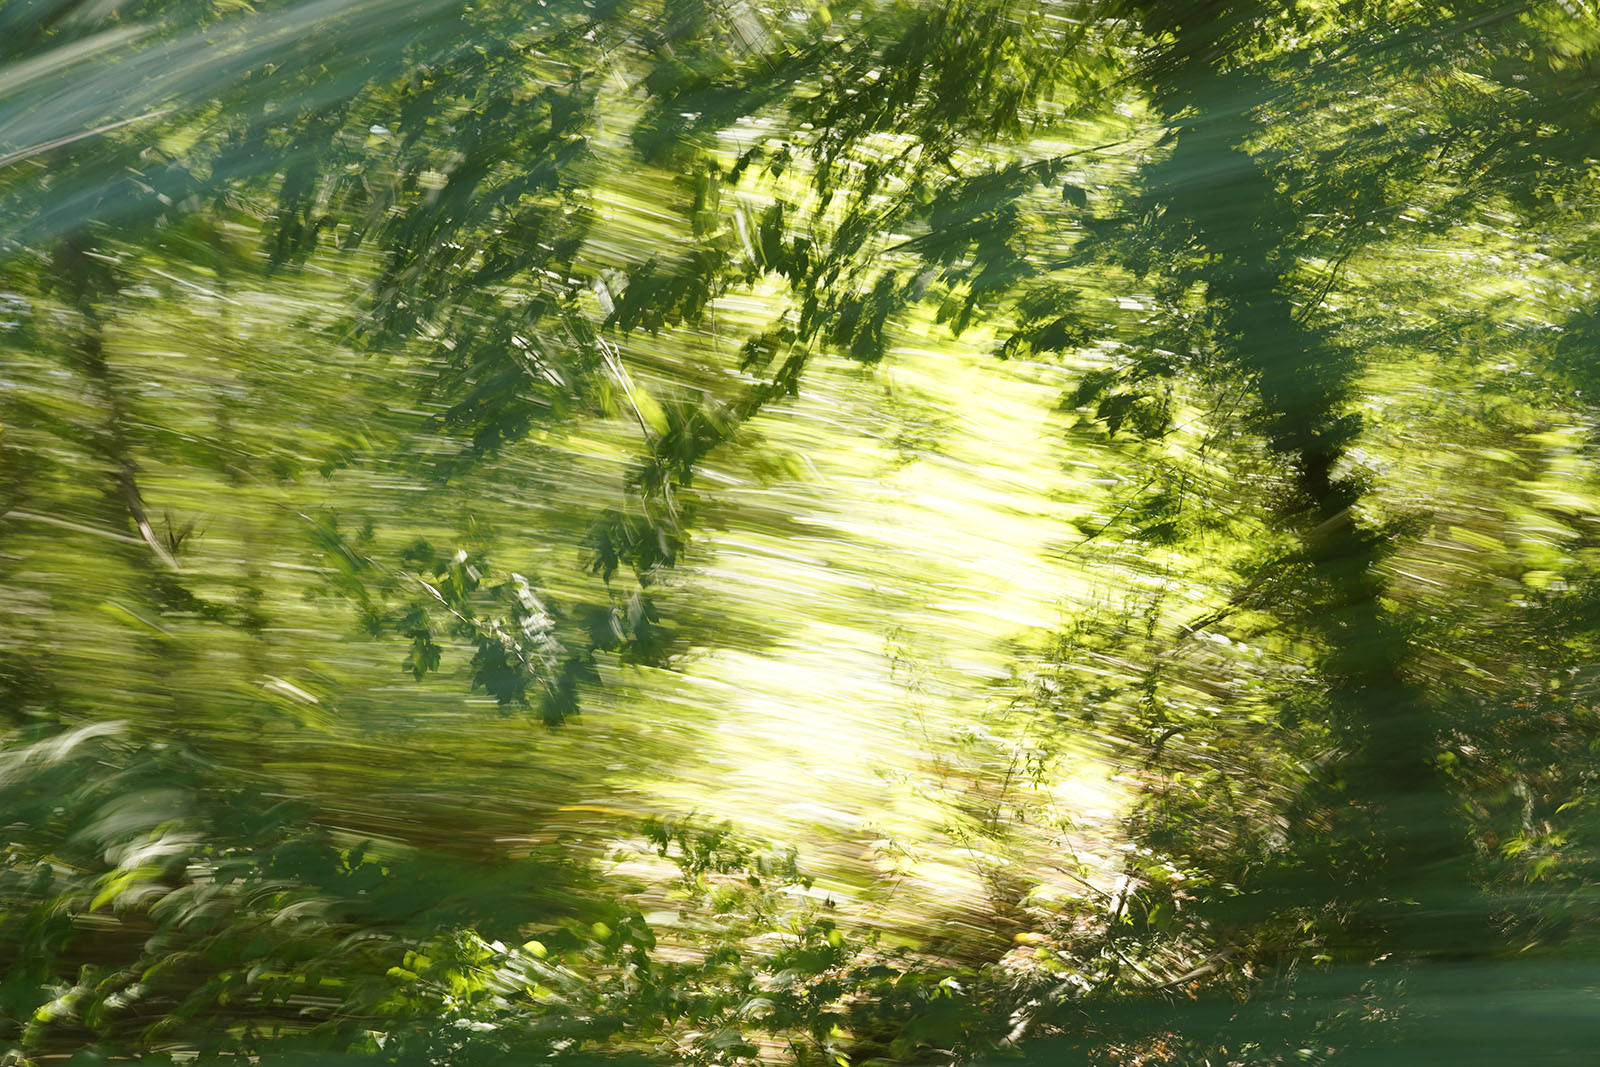 Fotokunstwerk aus der Serie "Travelscapes" von Jennifer Scales - Landschaft mit Beweungungsunschärfe, aufgenommen aus dem Zug